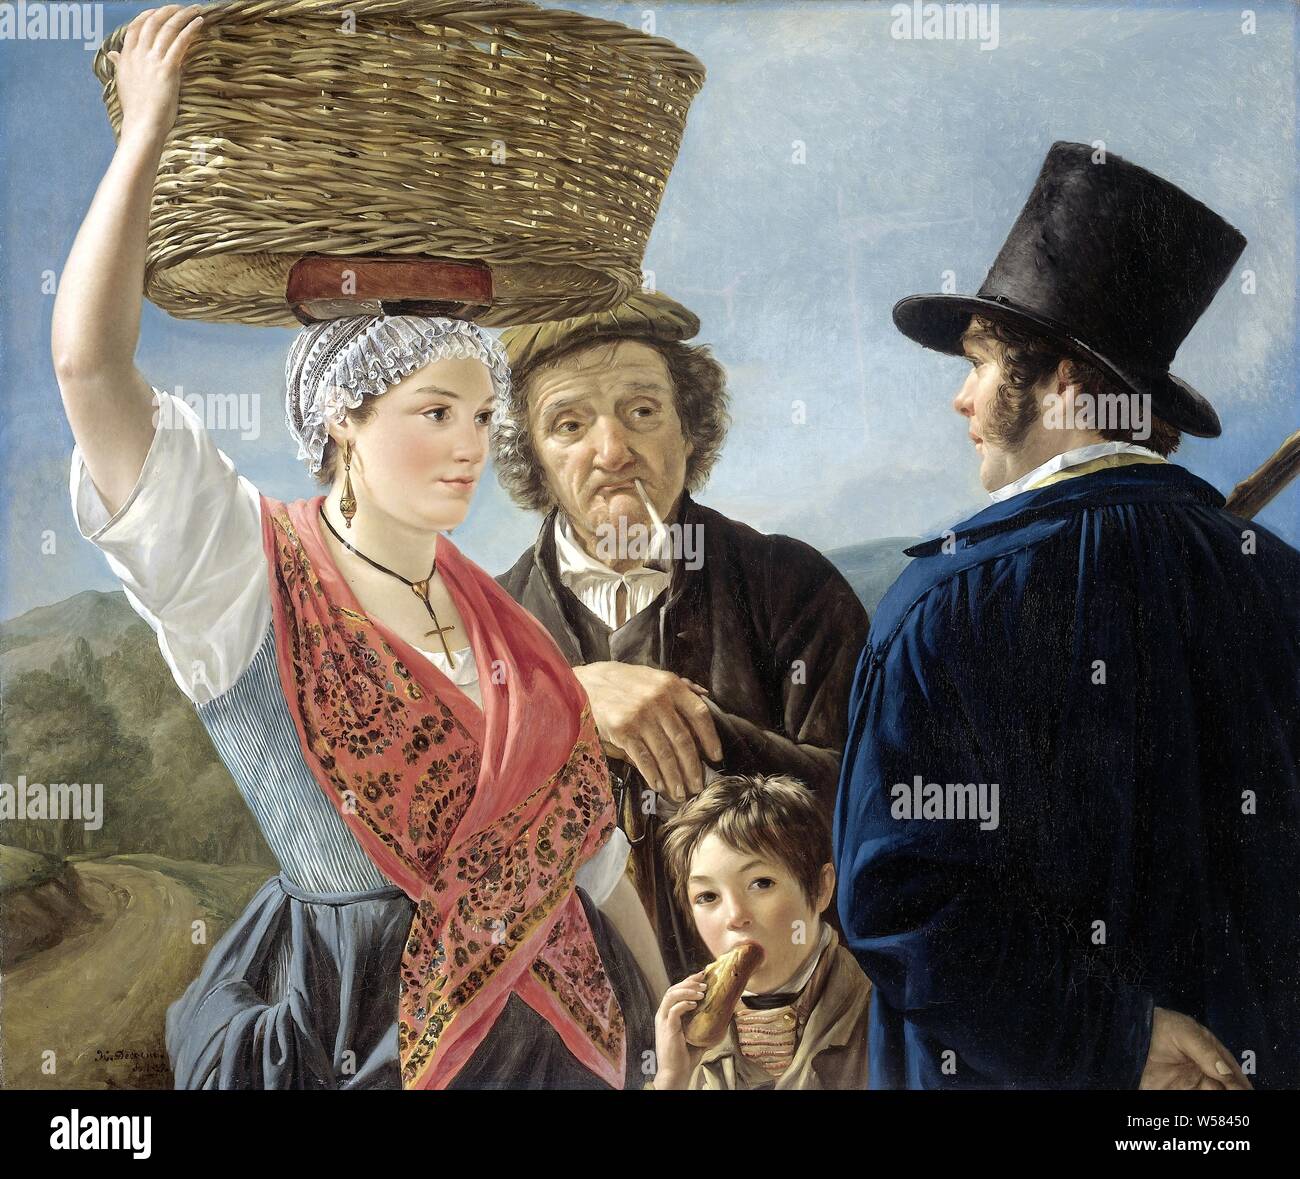 Markt Klatsch, Markt Nachrichten. Eine junge Frau mit einem Korb auf dem  Kopf mit einem jungen Mann in einem Hut. Ein alter Mann mit Pfeife hört,  auch ein Junge, der ein Stück